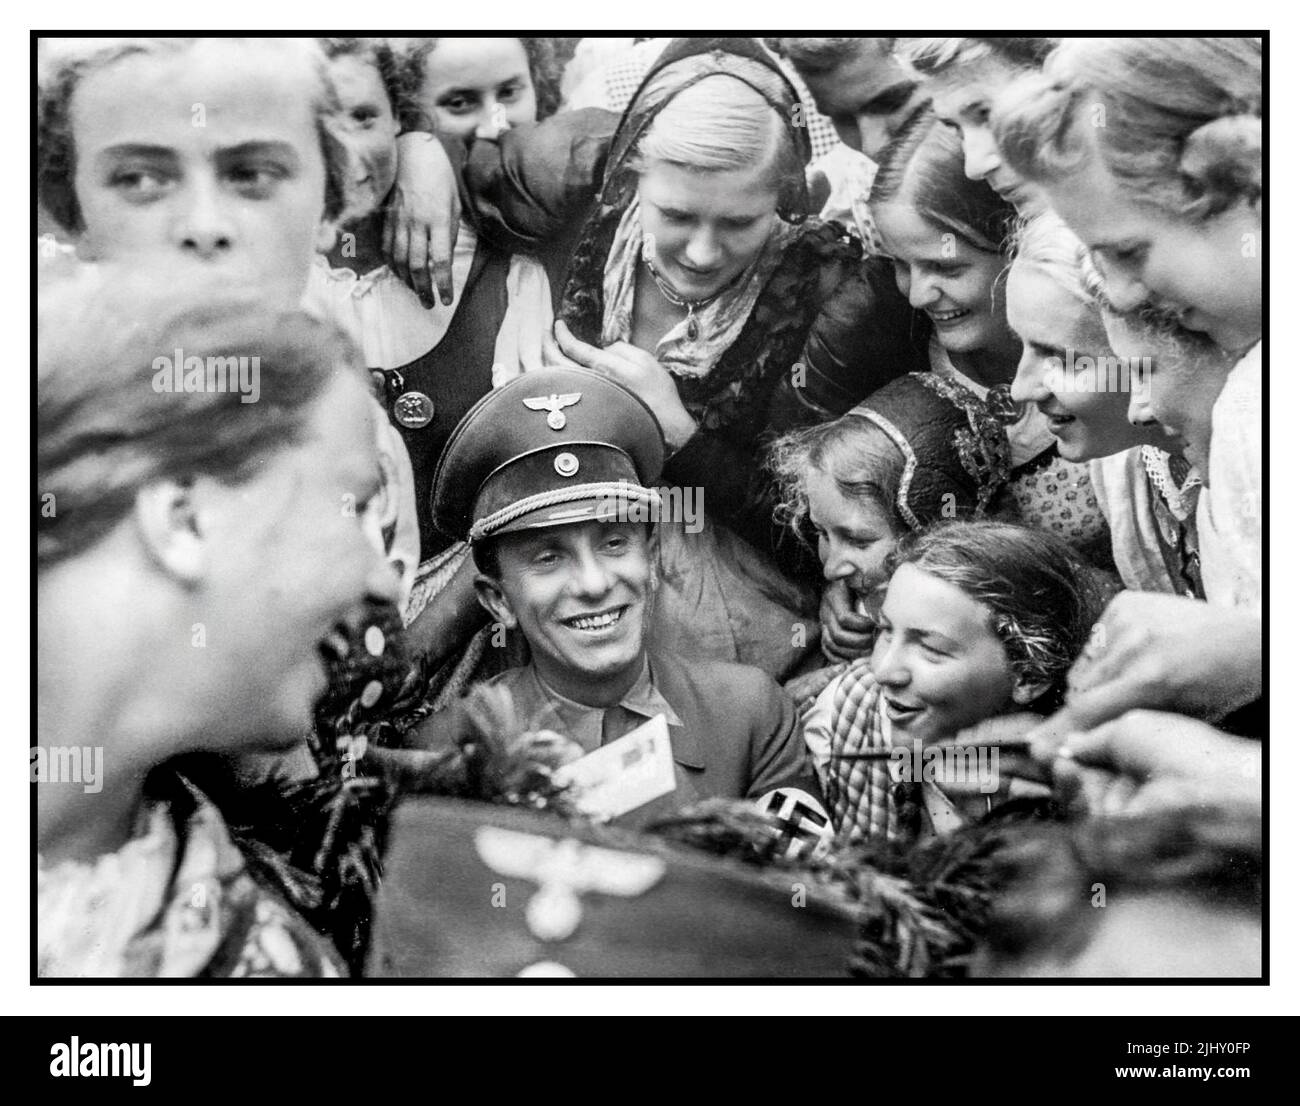 Il leader nazista Joseph Goebbels è circondato dalla entusiastica Lega delle ragazze tedesche o dalla banda dei Maidens tedeschi (in tedesco: Bund Deutscher Mädel, abbreviata come BDM) l'ala femminile del movimento giovanile del Partito nazista, la Gioventù Hitler. Paul Joseph Goebbels, (Rheydt, 29 ottobre 1897), è morto il 1 maggio 1945, Berlino), ministro della propaganda per il terzo Reich tedesco sotto Adolf Hitler. Maestro oratore e propagandista, presentò al popolo tedesco un'immagine favorevole del regime nazista. Adolf Hitler creò il Ministero dell'Illuminismo e della Propaganda del Reich con Goebbels alla sua testa. Foto Stock